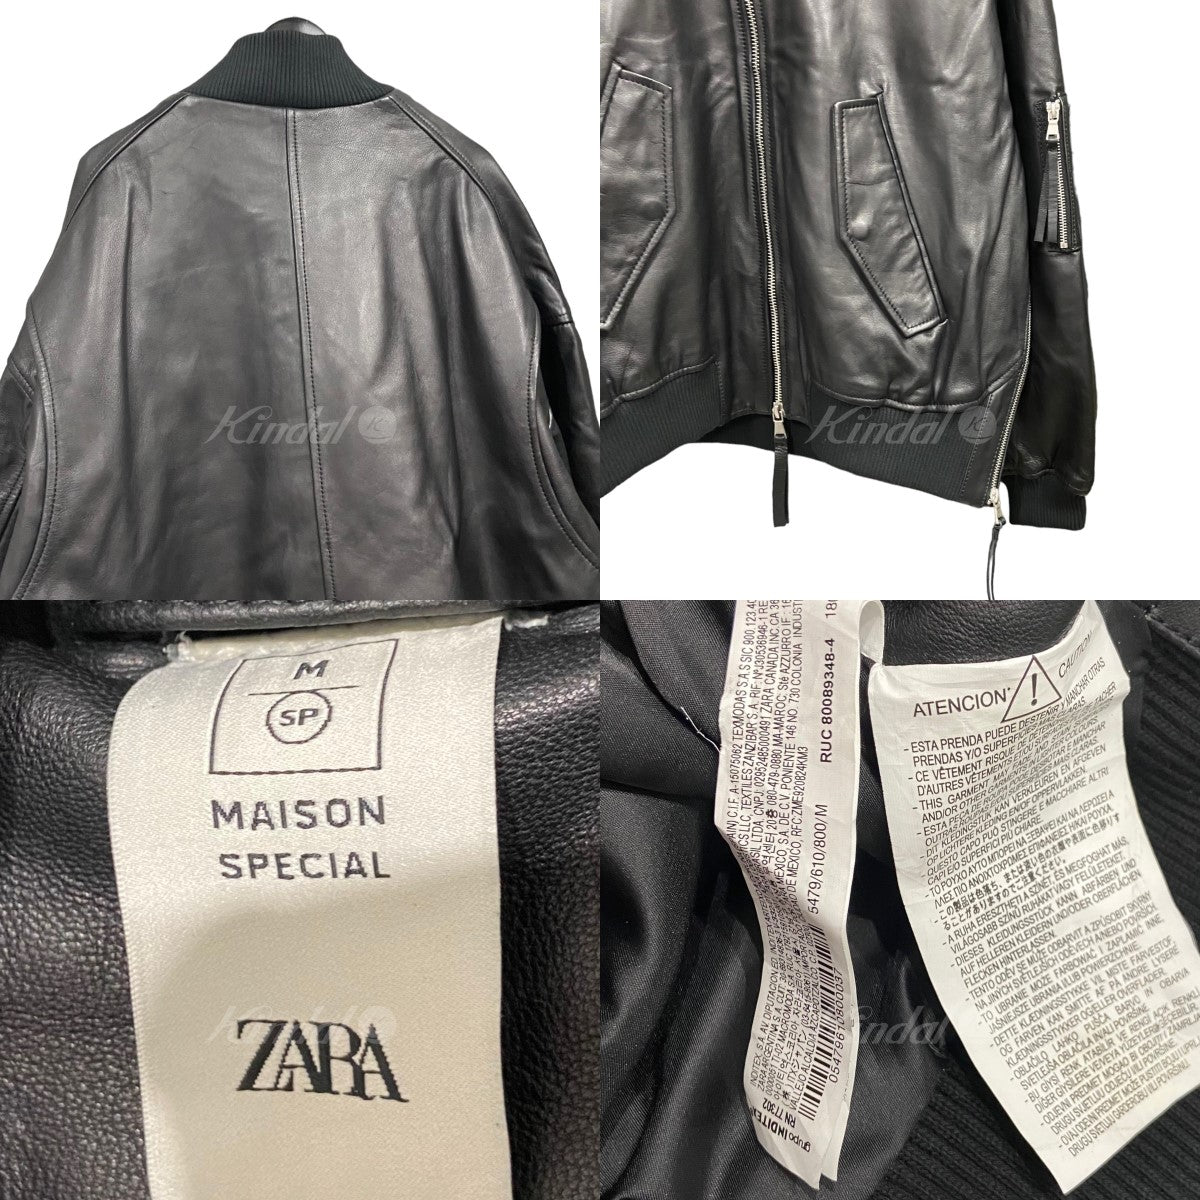 ZARA レザーボンバージャケット MAISON SPECAL今月購入で一度だけ着用しました